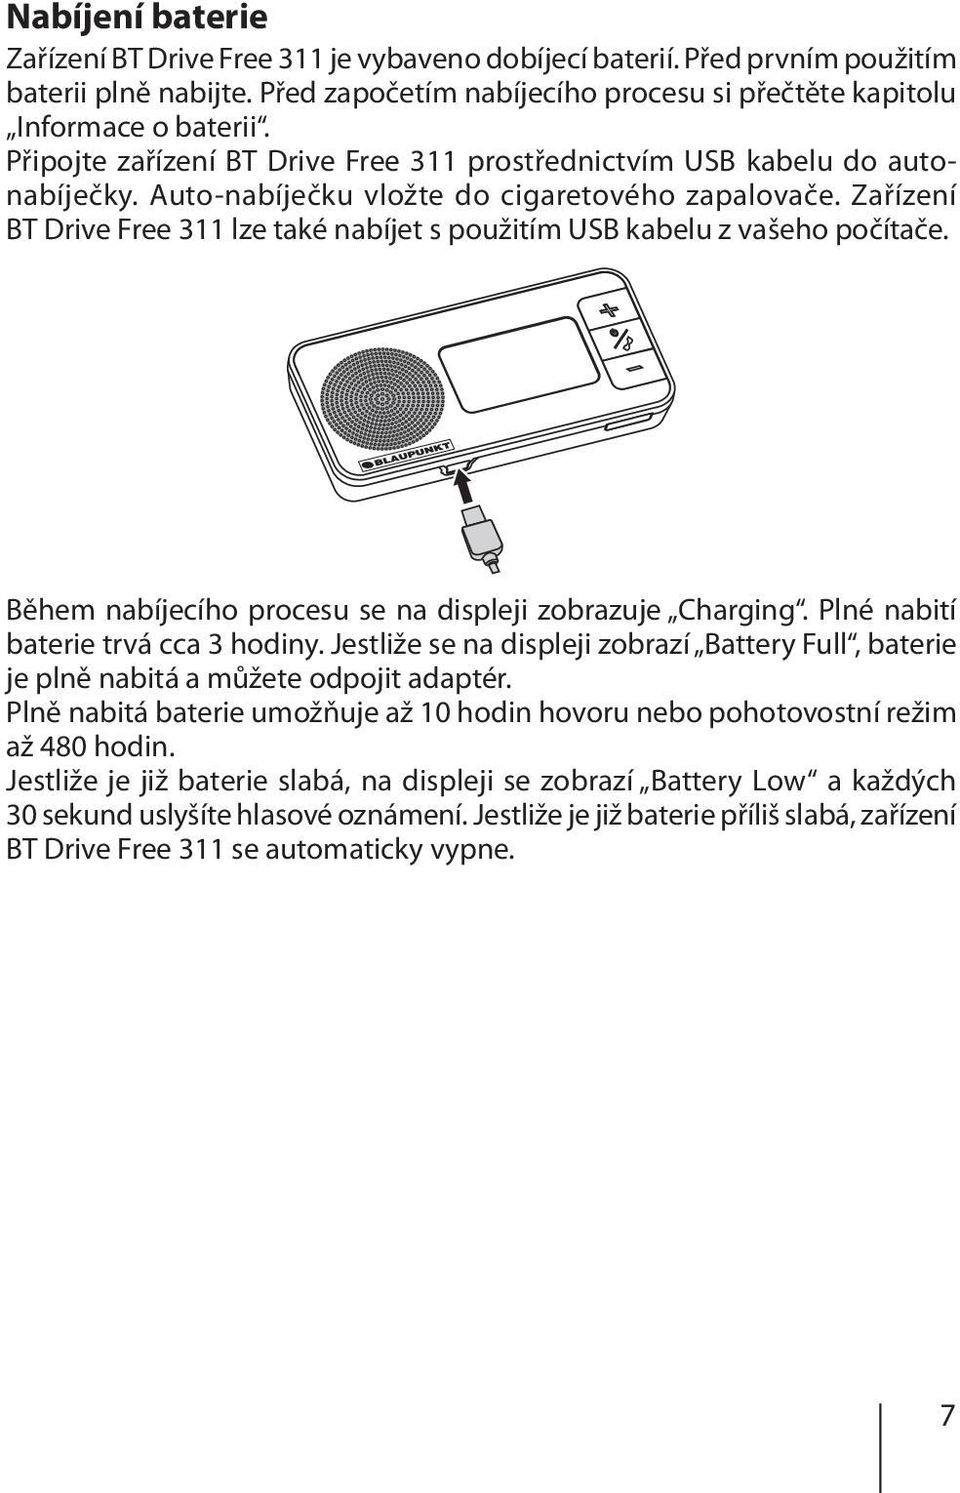 Zařízení BT Drive Free 311 lze také nabíjet s použitím USB kabelu z vašeho počítače. Během nabíjecího procesu se na displeji zobrazuje Charging. Plné nabití baterie trvá cca 3 hodiny.